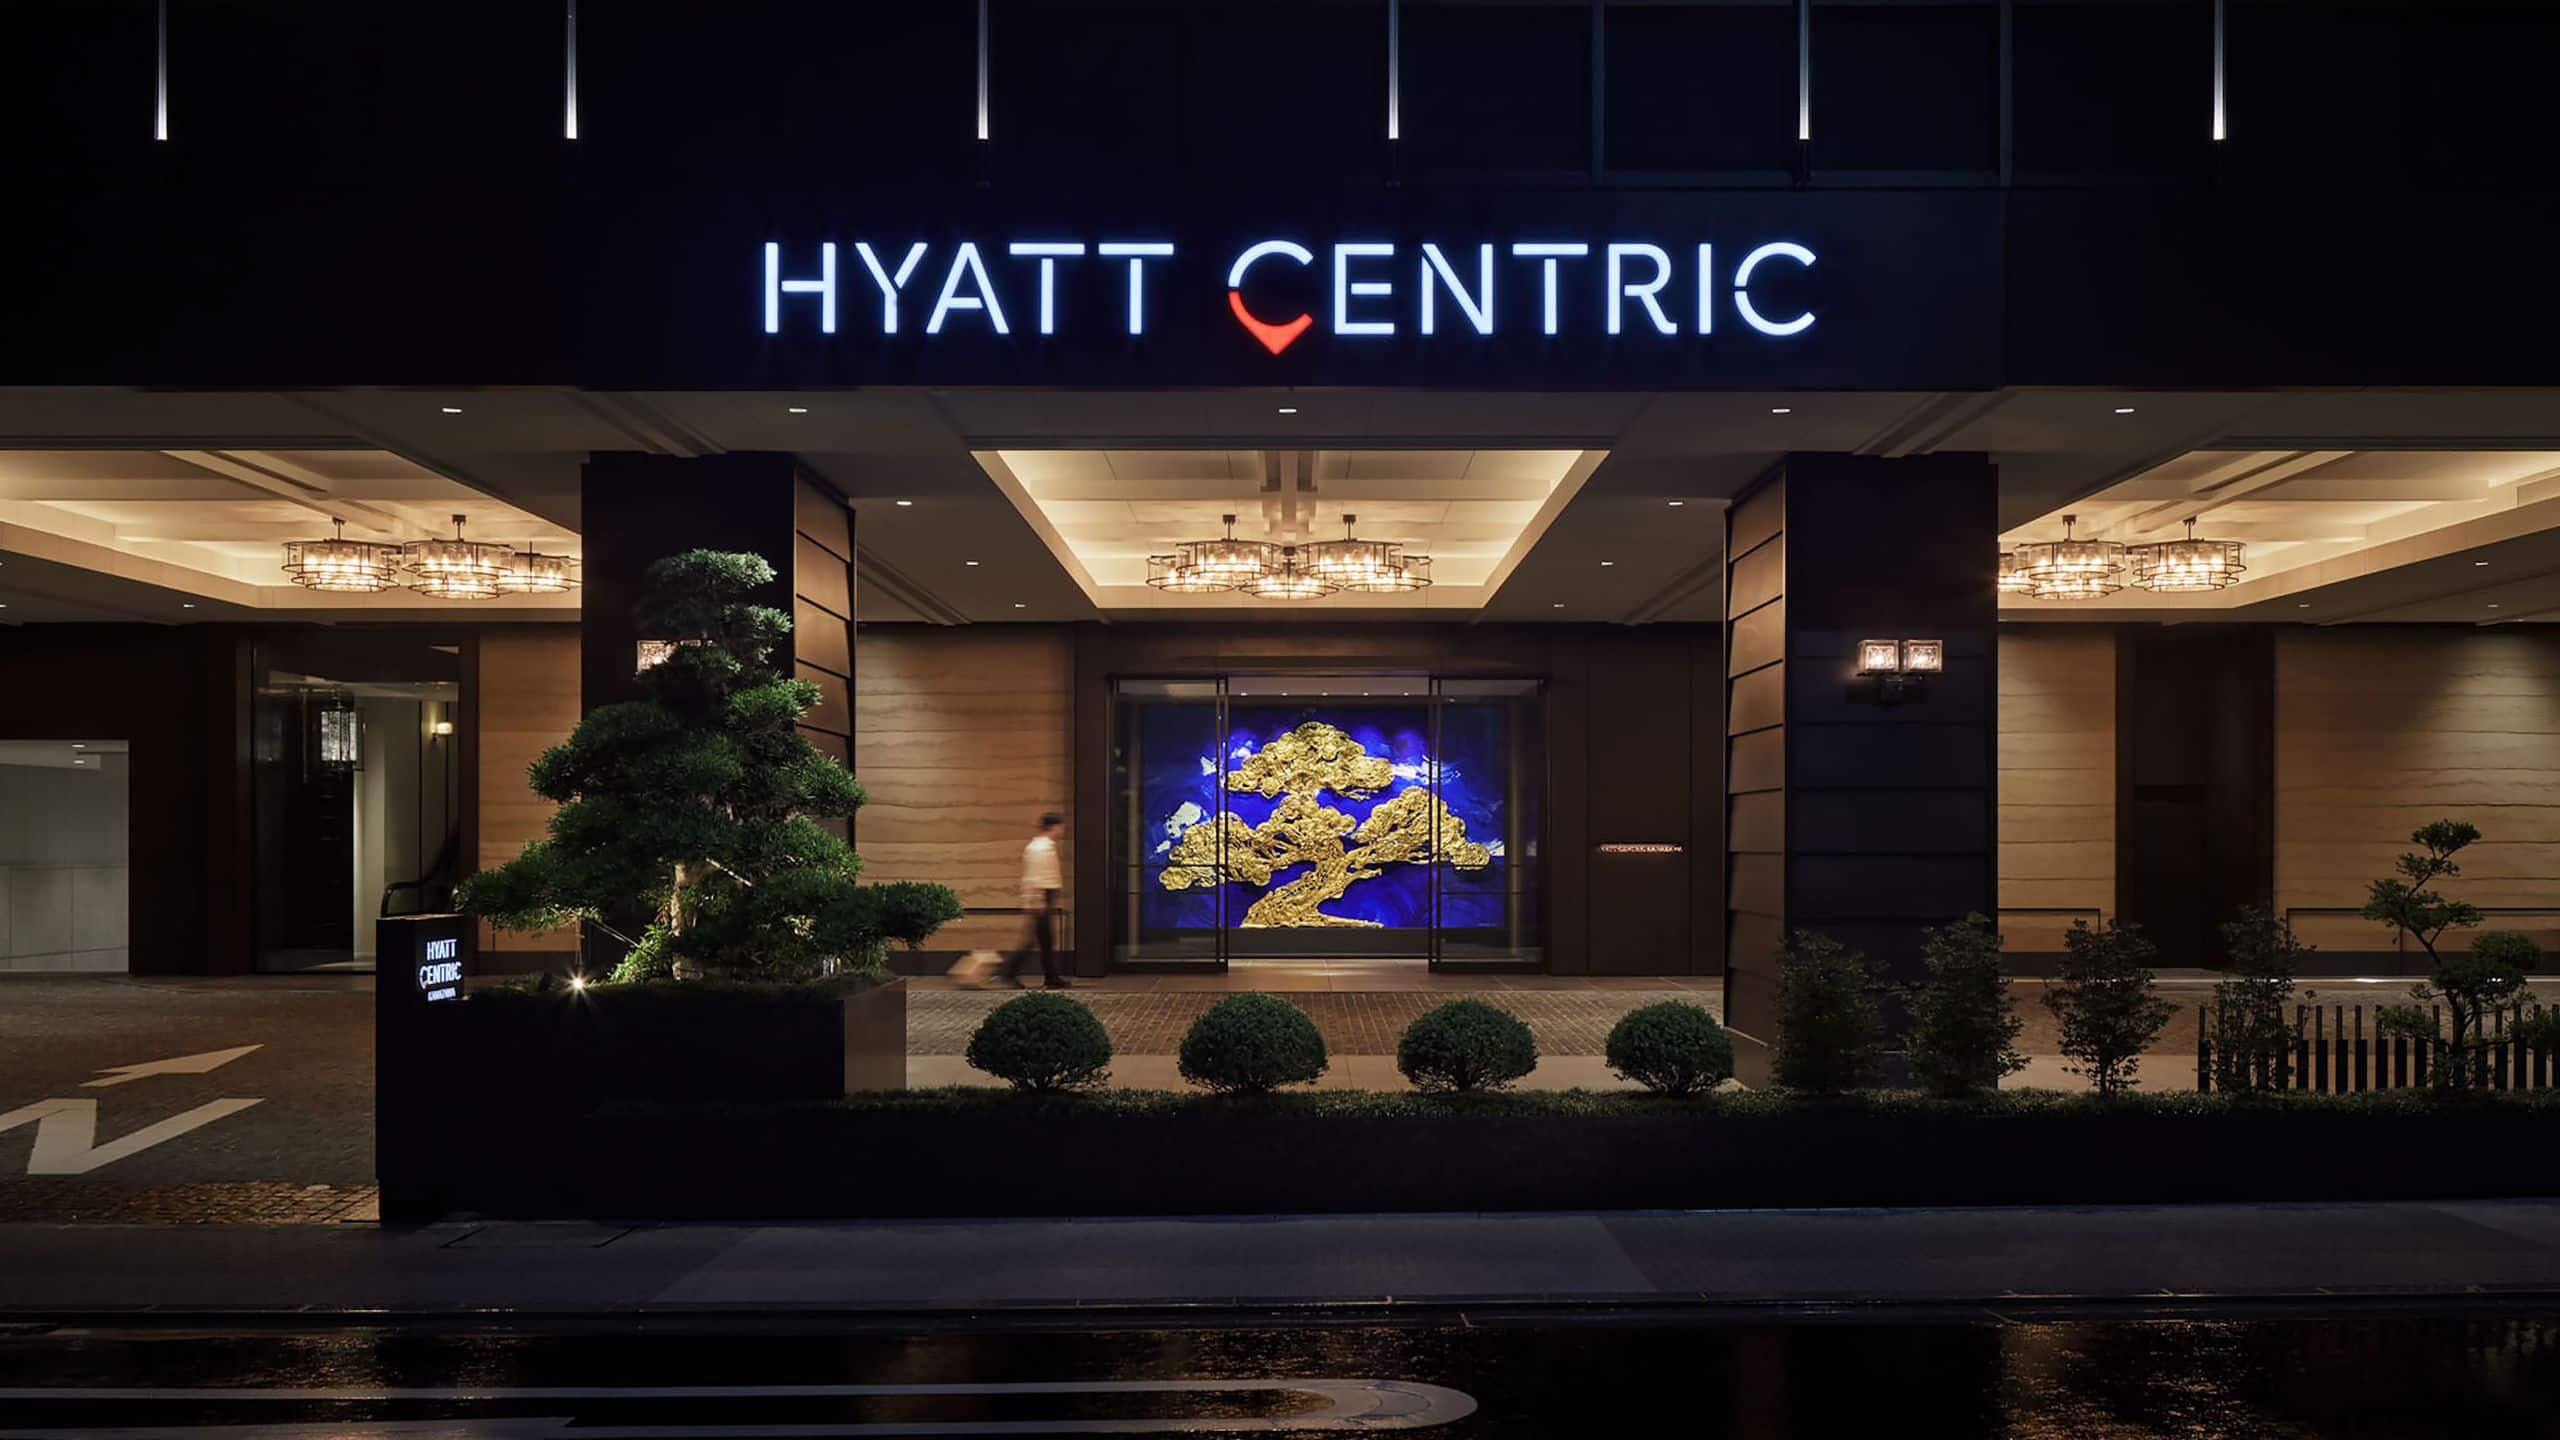 Hyatt Centric Kanazawa Entrance First Floor Nighttime with Guest